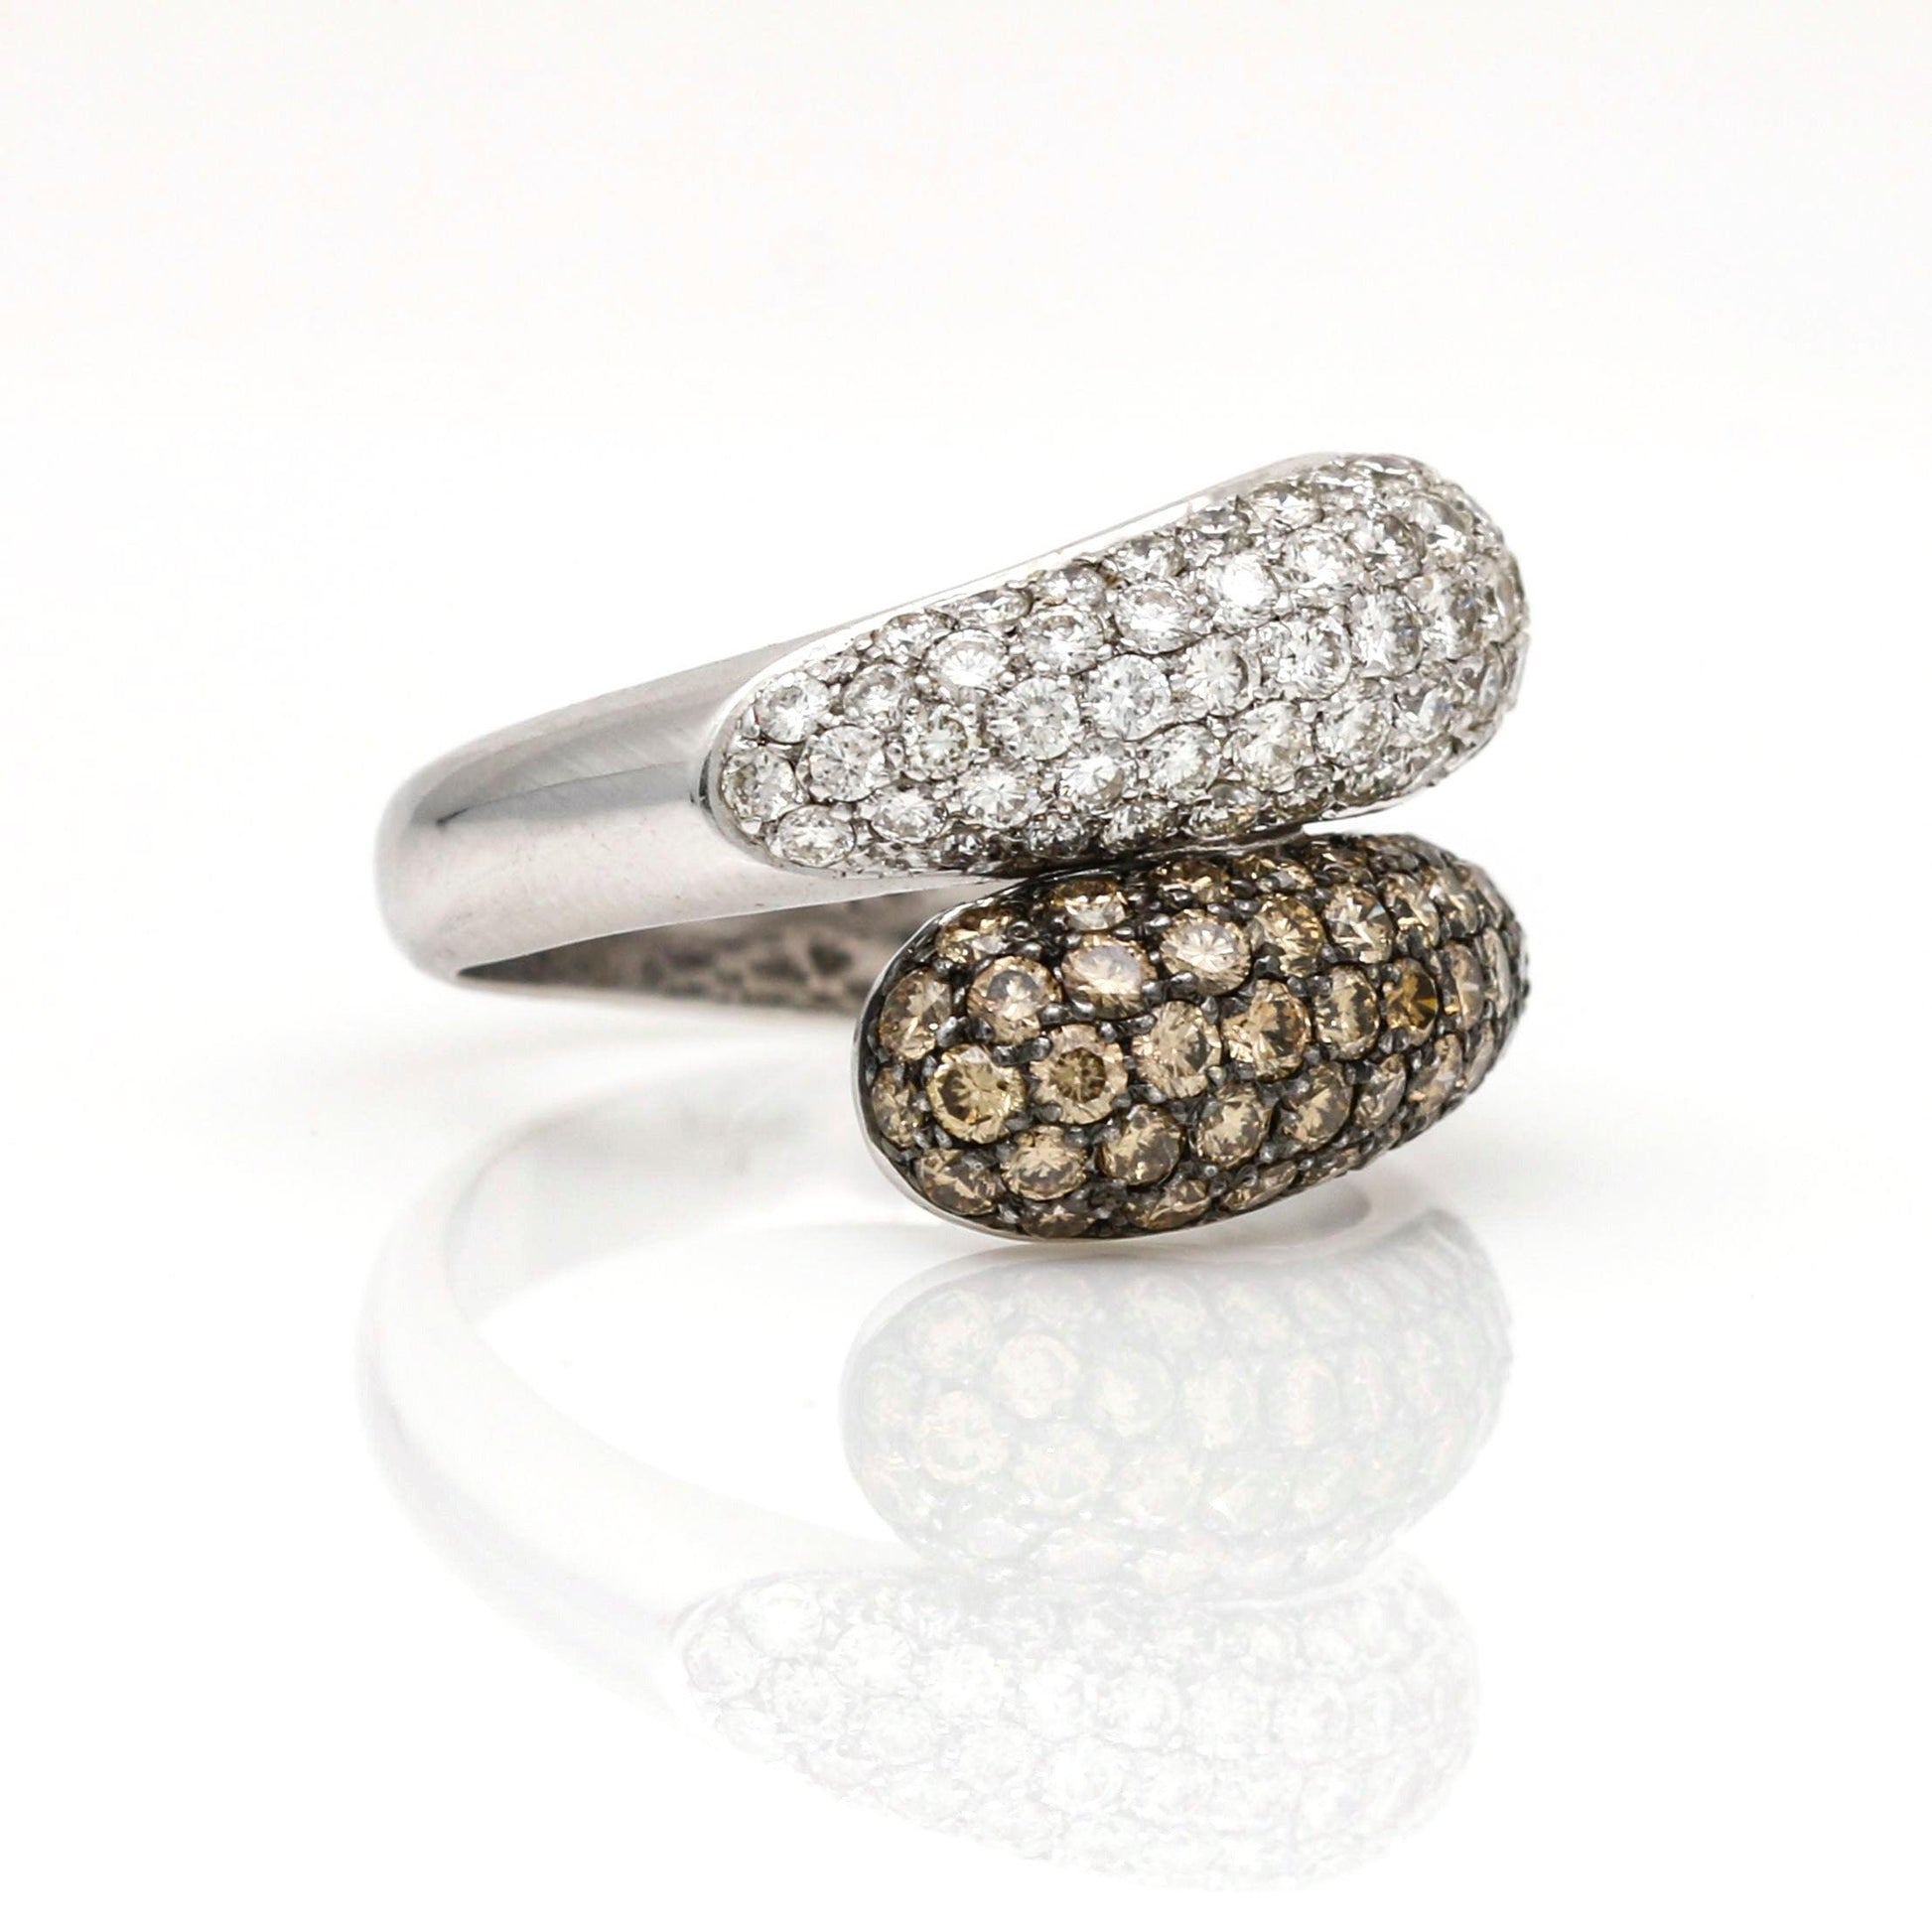 Women's Fancy Color Diamond Teardrop Bypass Ring in 18k White Gold - 31 Jewels Inc.